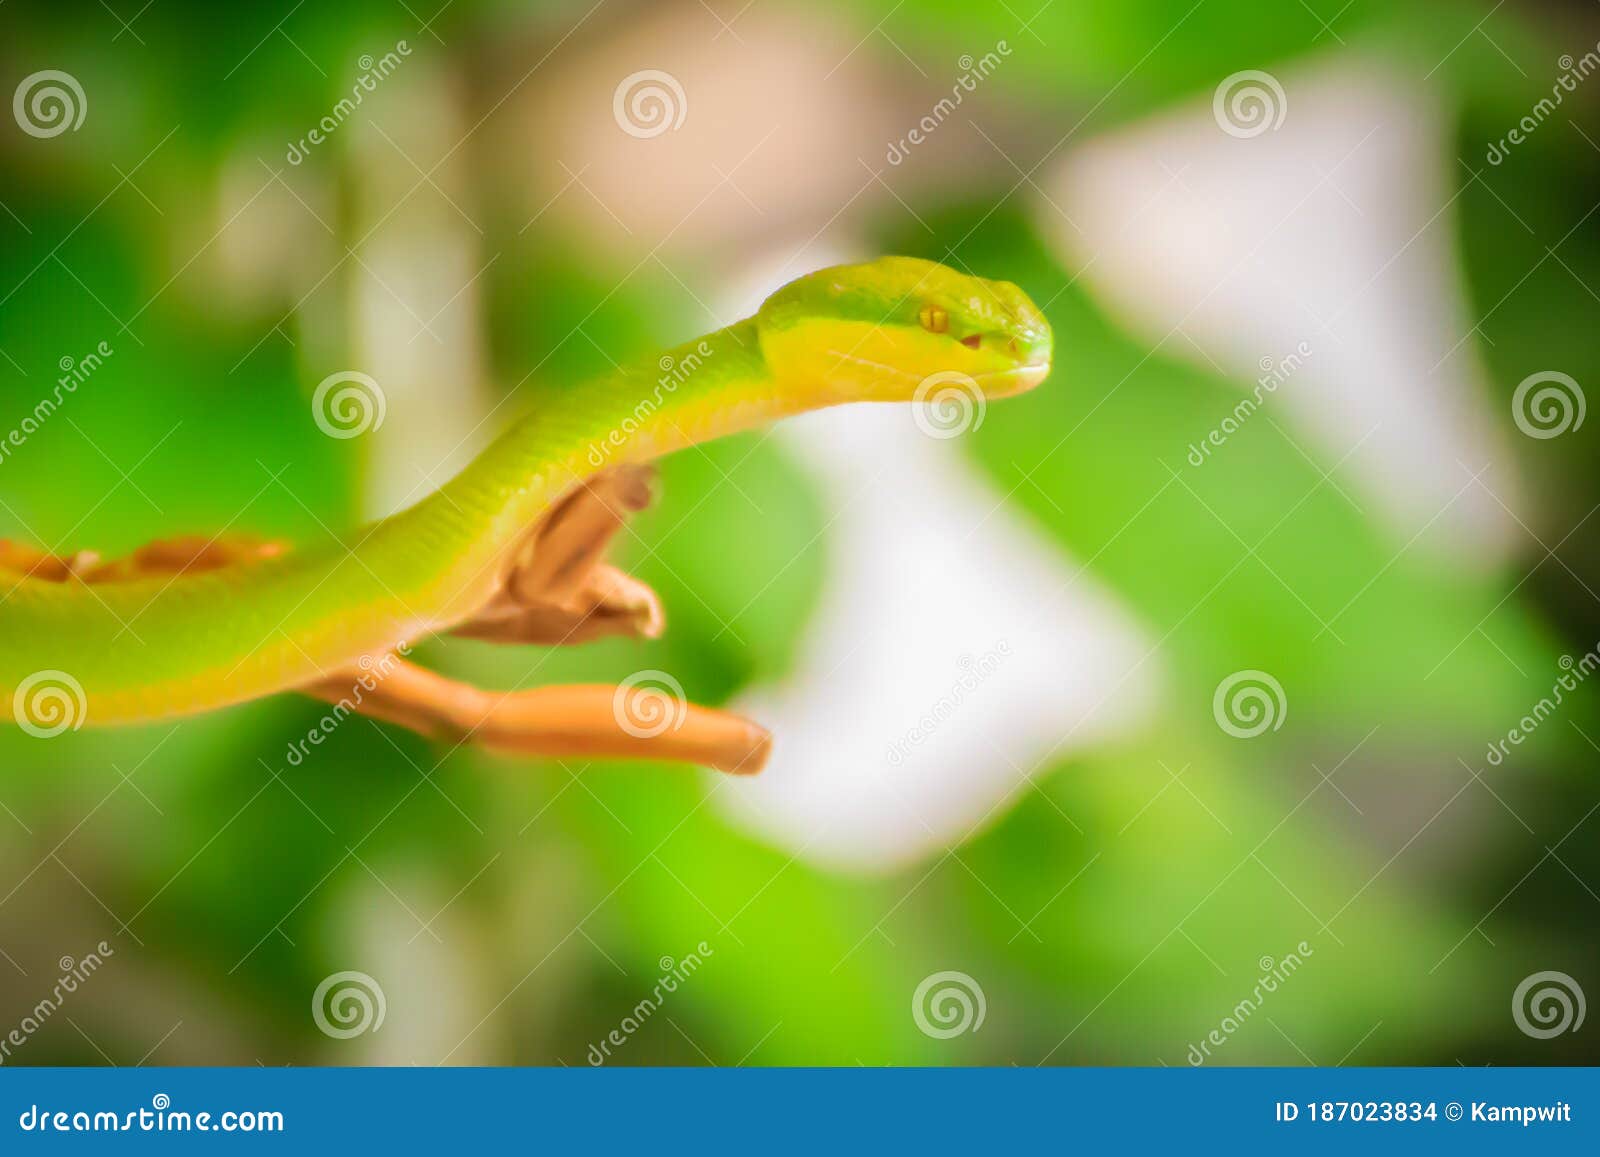 灵巧的绿瘦蛇